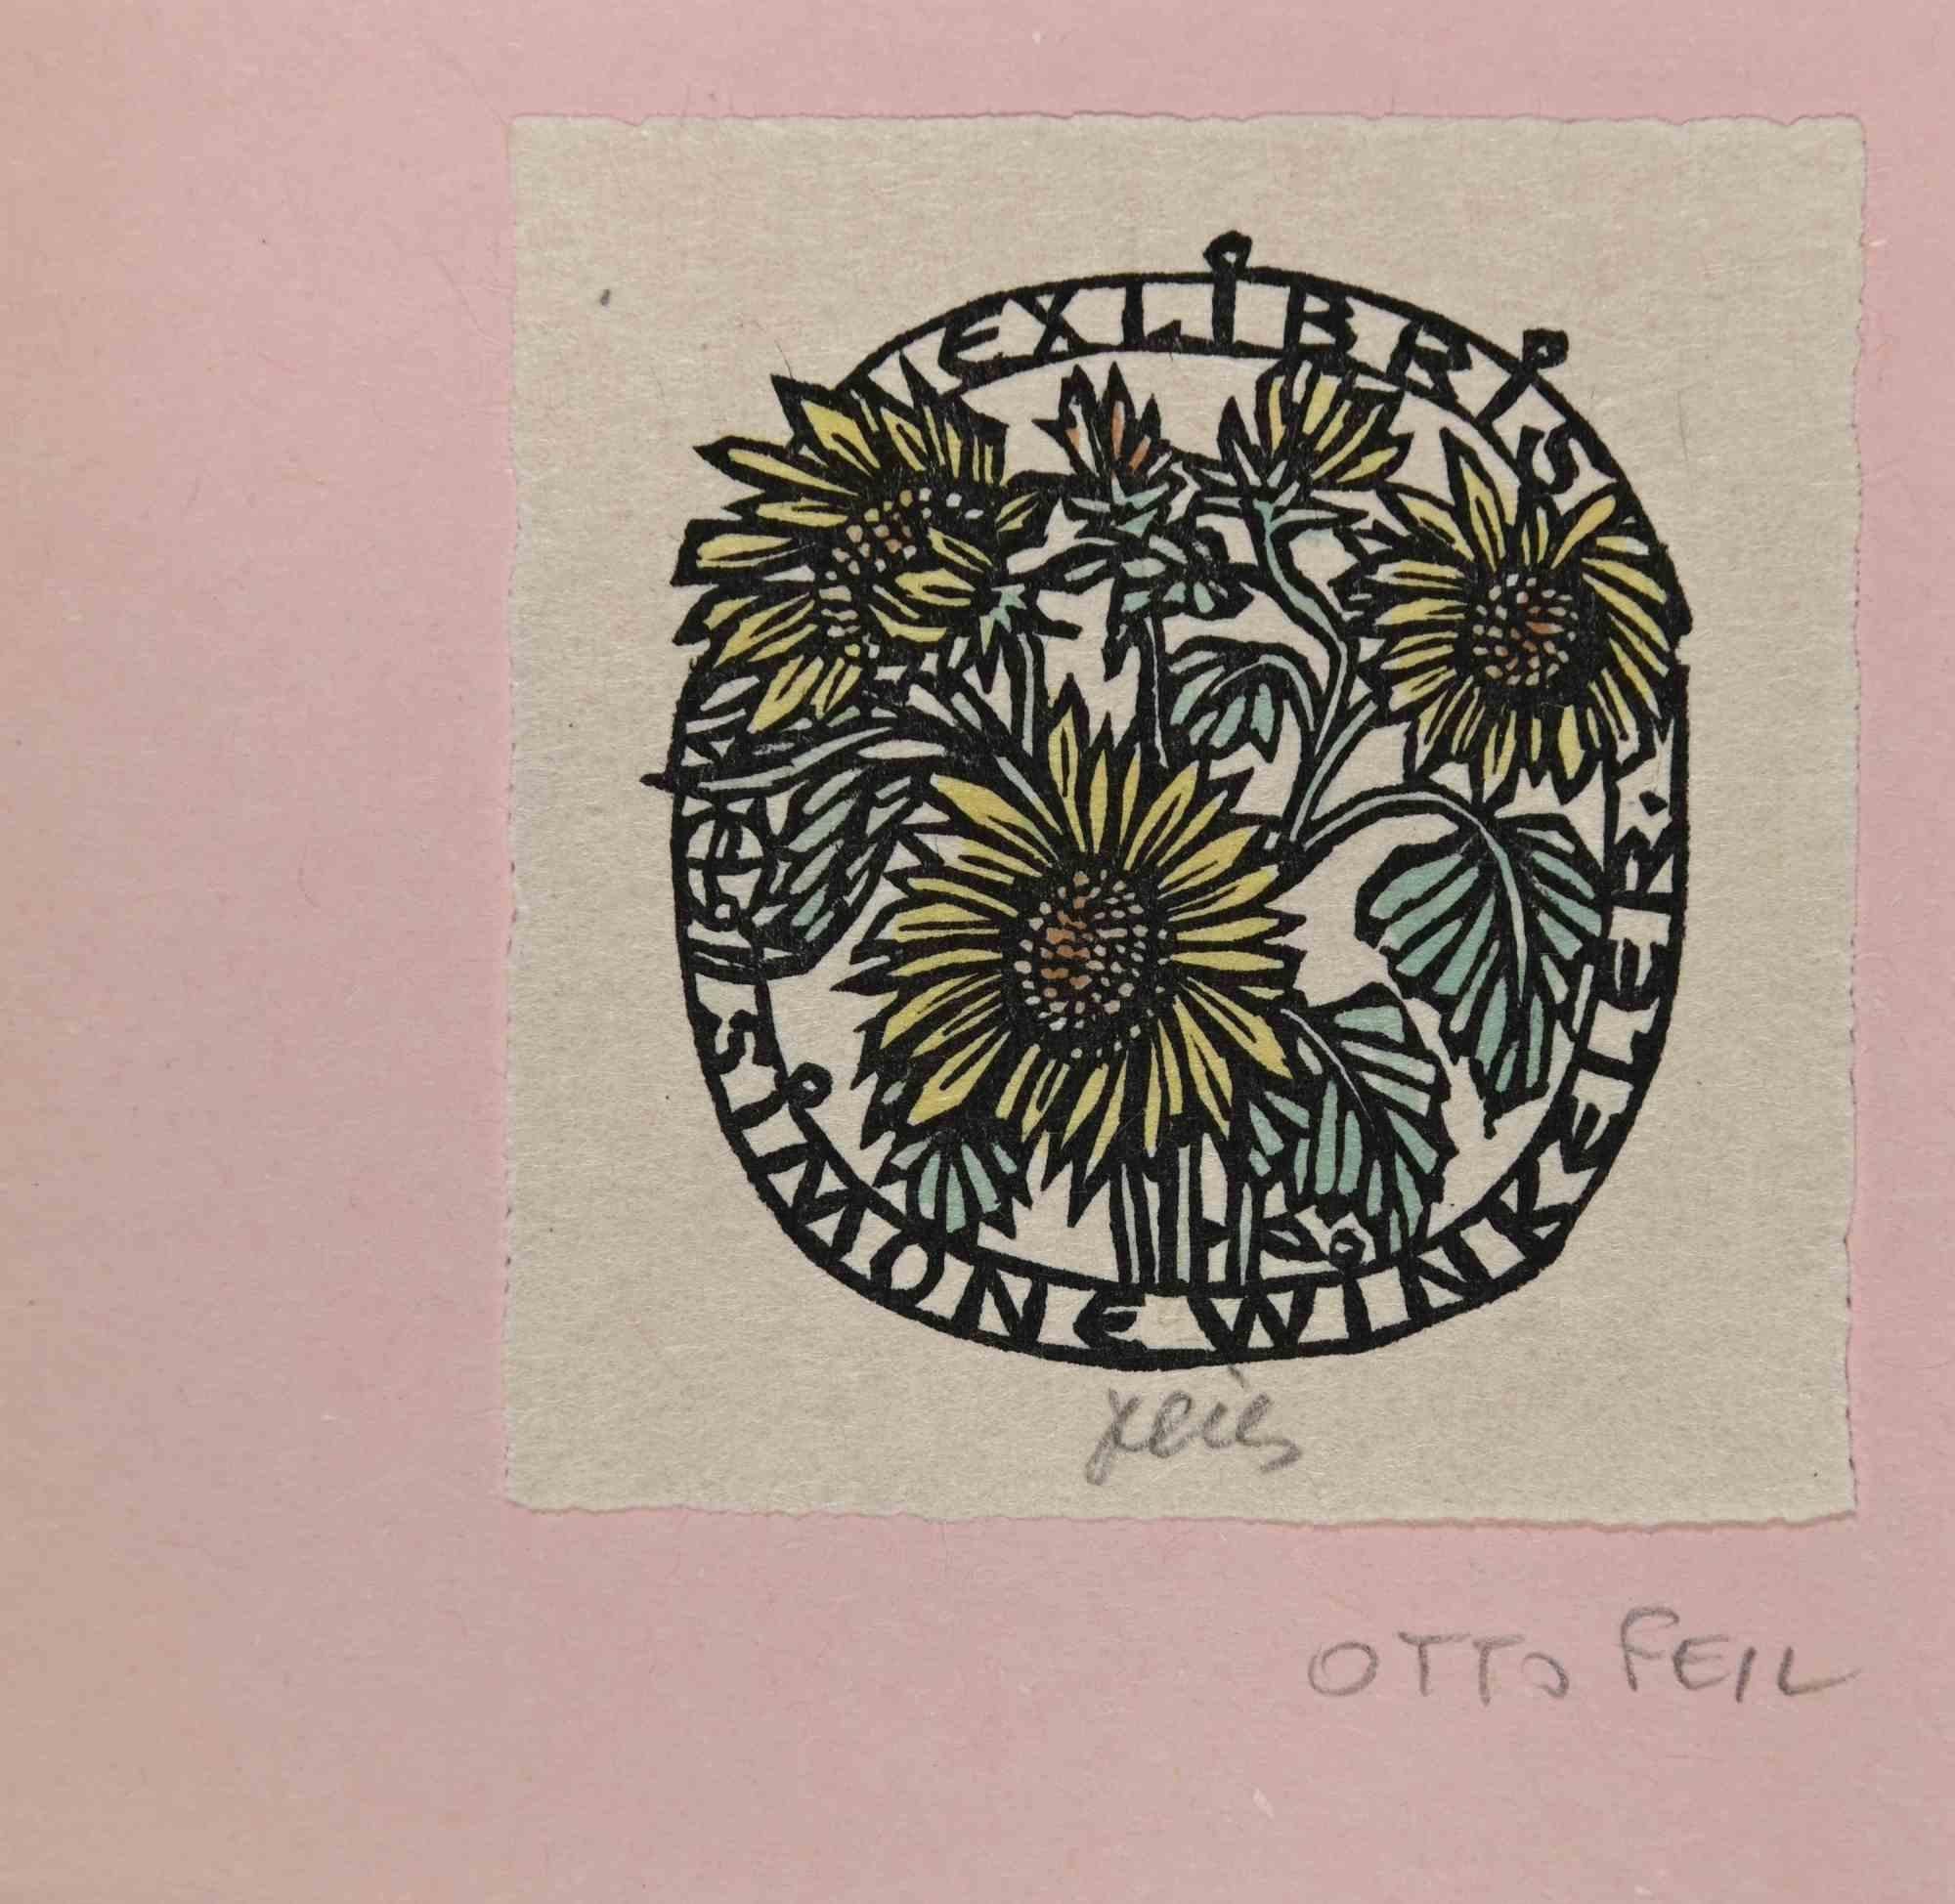 Ex Libris - Simone Winkeler ist ein Kunstwerk des österreichischen Künstlers Otto Feil (1894-1985) aus den 1940er Jahren. 

Holzschnitt auf Seidenpapier. Handsigniert am unteren Rand.

Das Werk ist auf rosa Karton geklebt.

Abmessungen insgesamt: